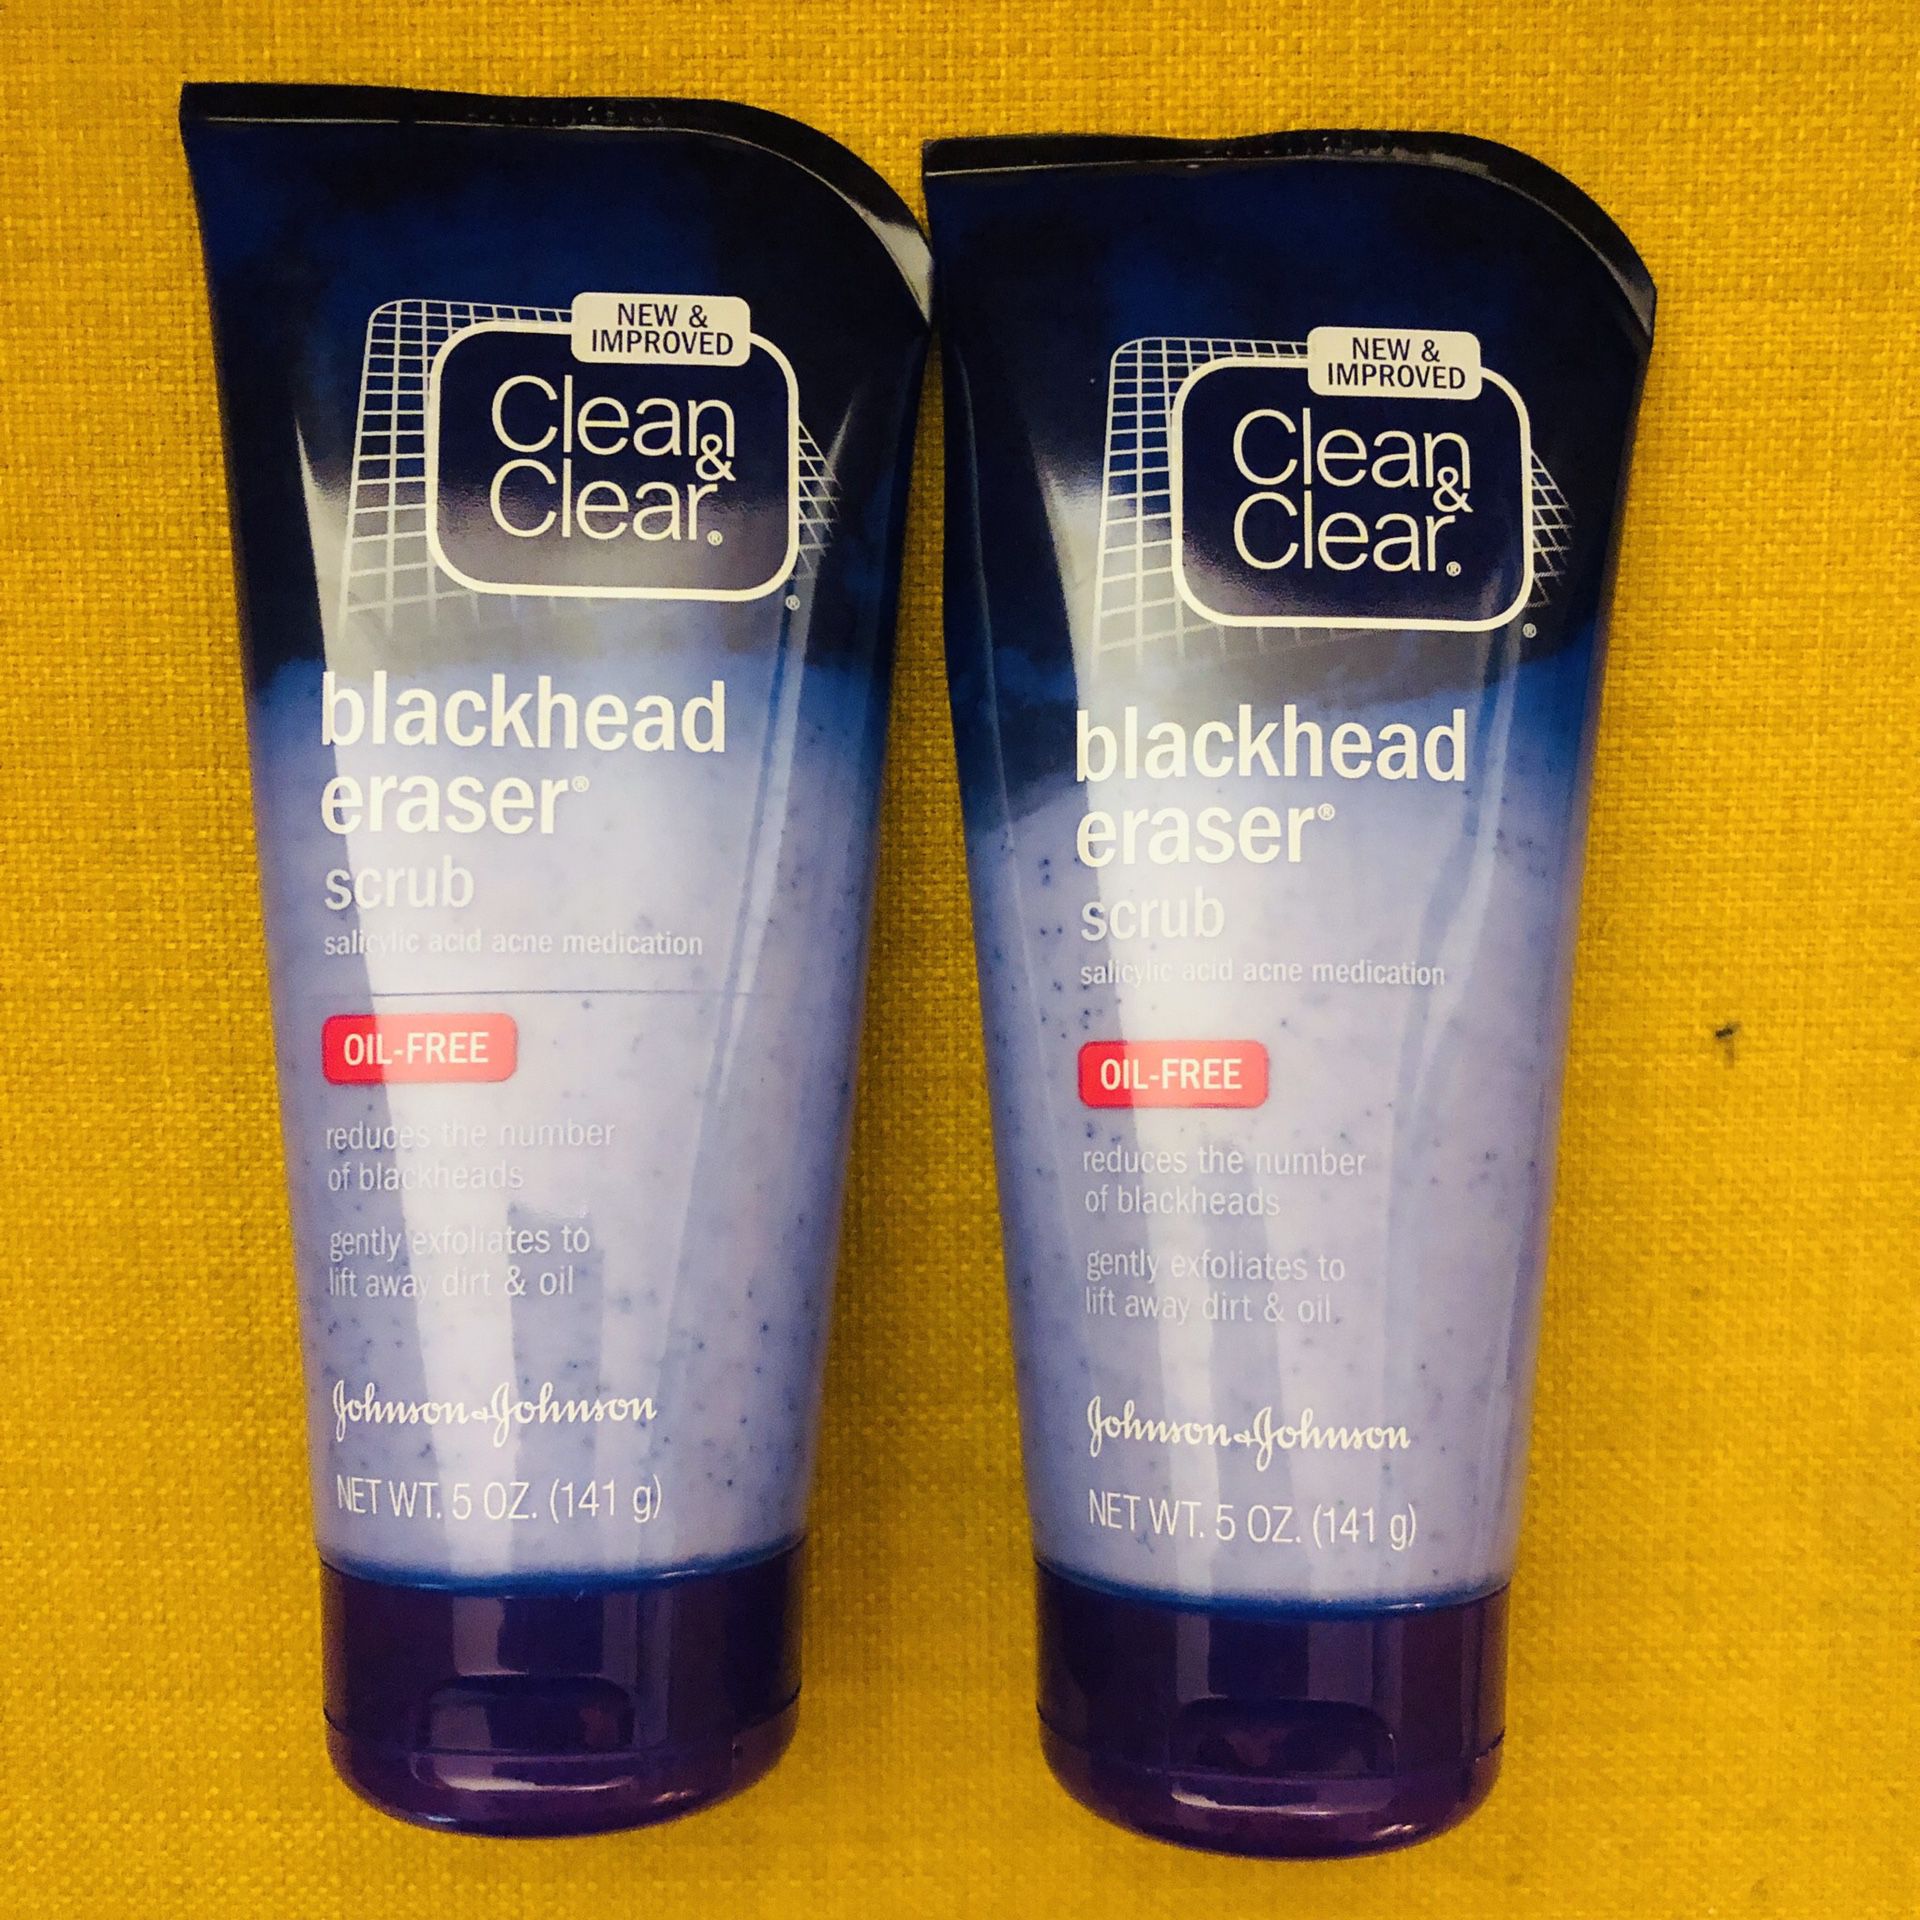 Clean Clear Blackhead Eraser Scrub